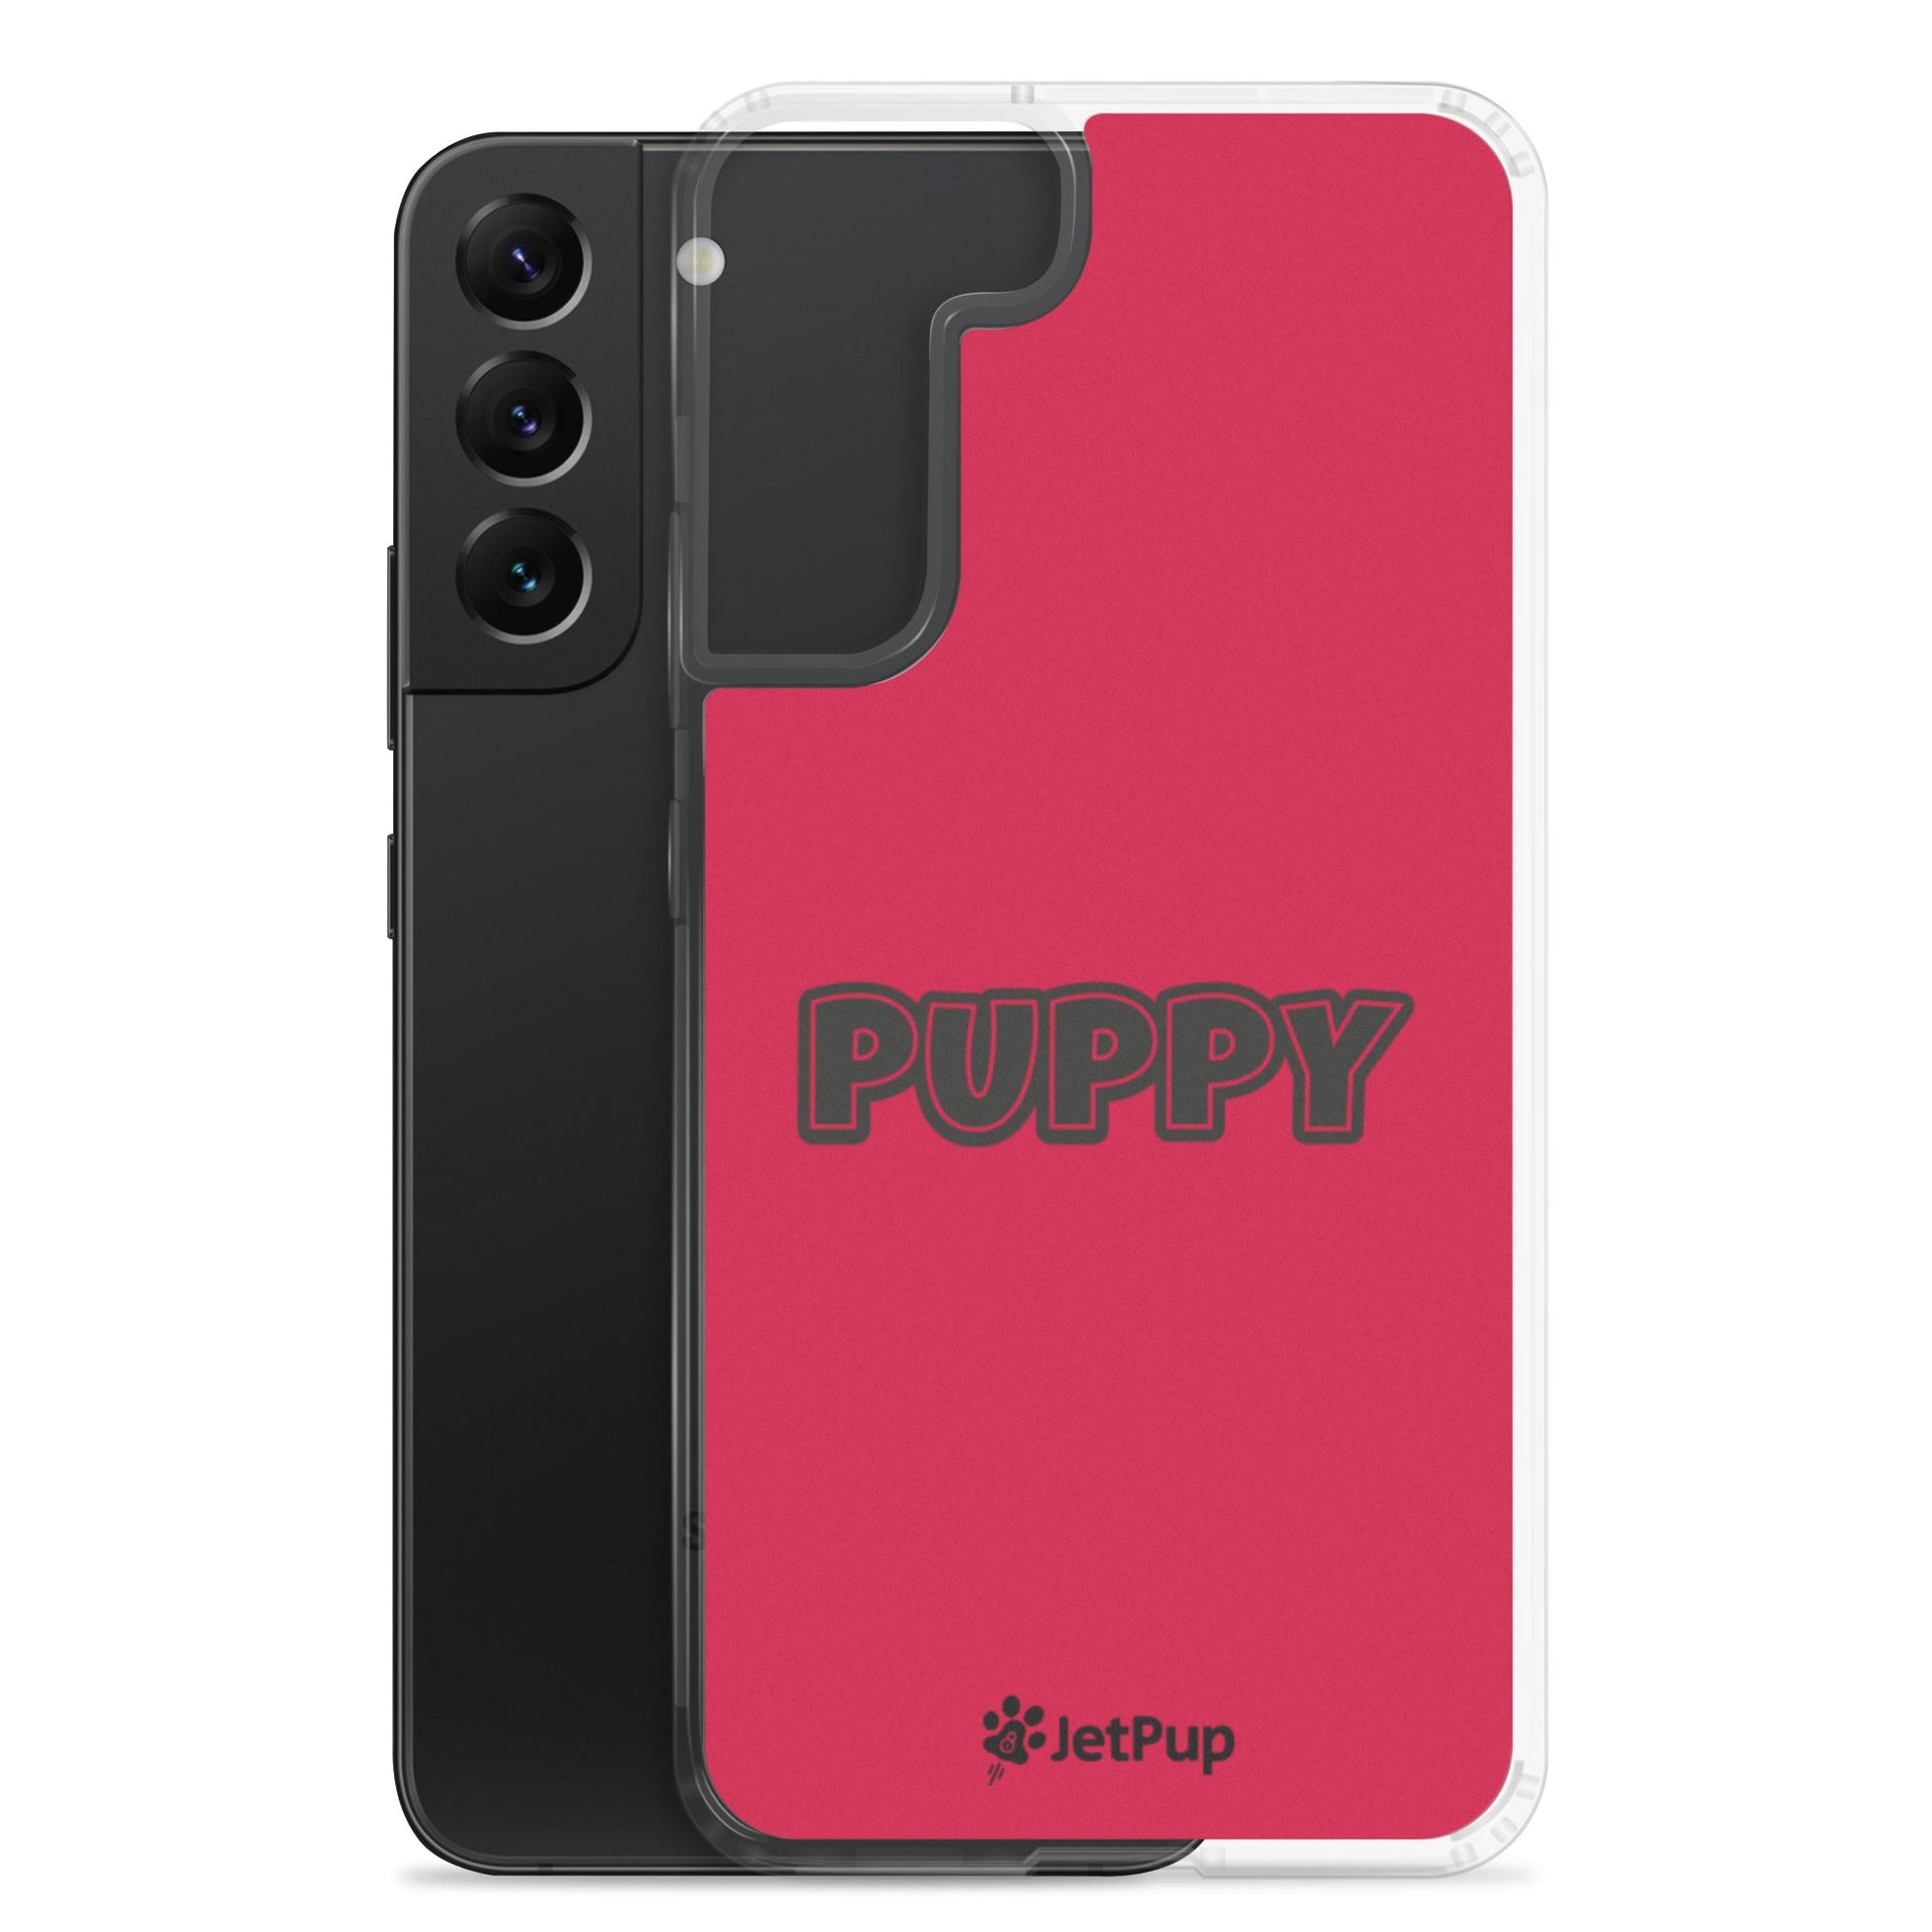 Puppy Samsung Case - Red - JetPup